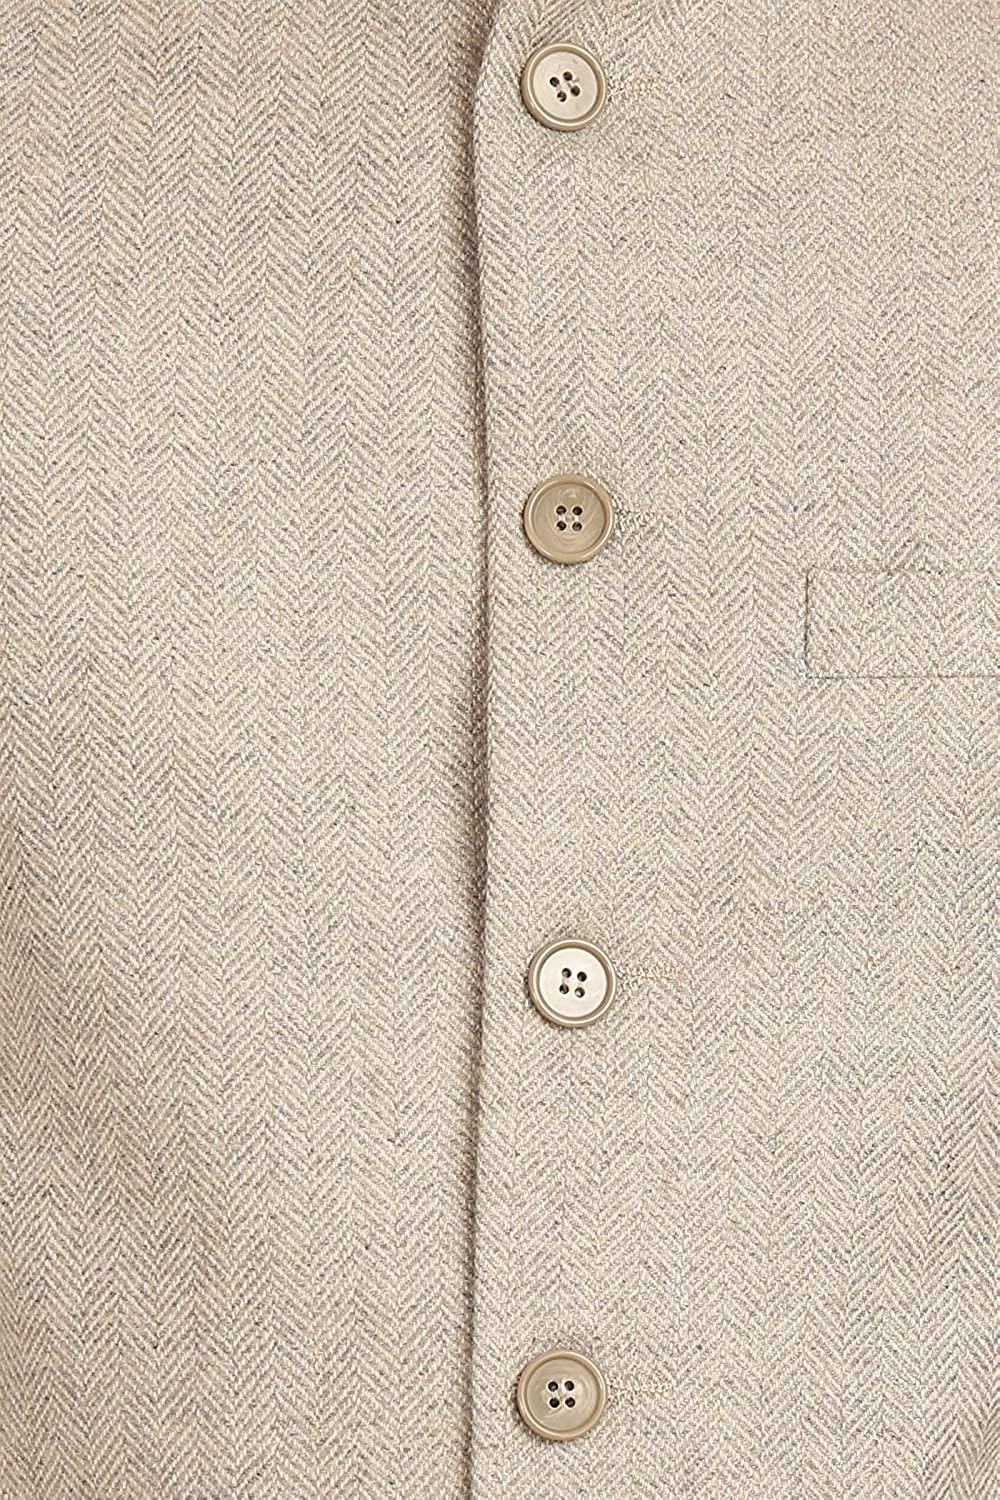 Buy Nehru Jacket Tweed Woolen Bandhgala Waistcoat Brownish Grey Striped  Sadri 44 at Amazon.in